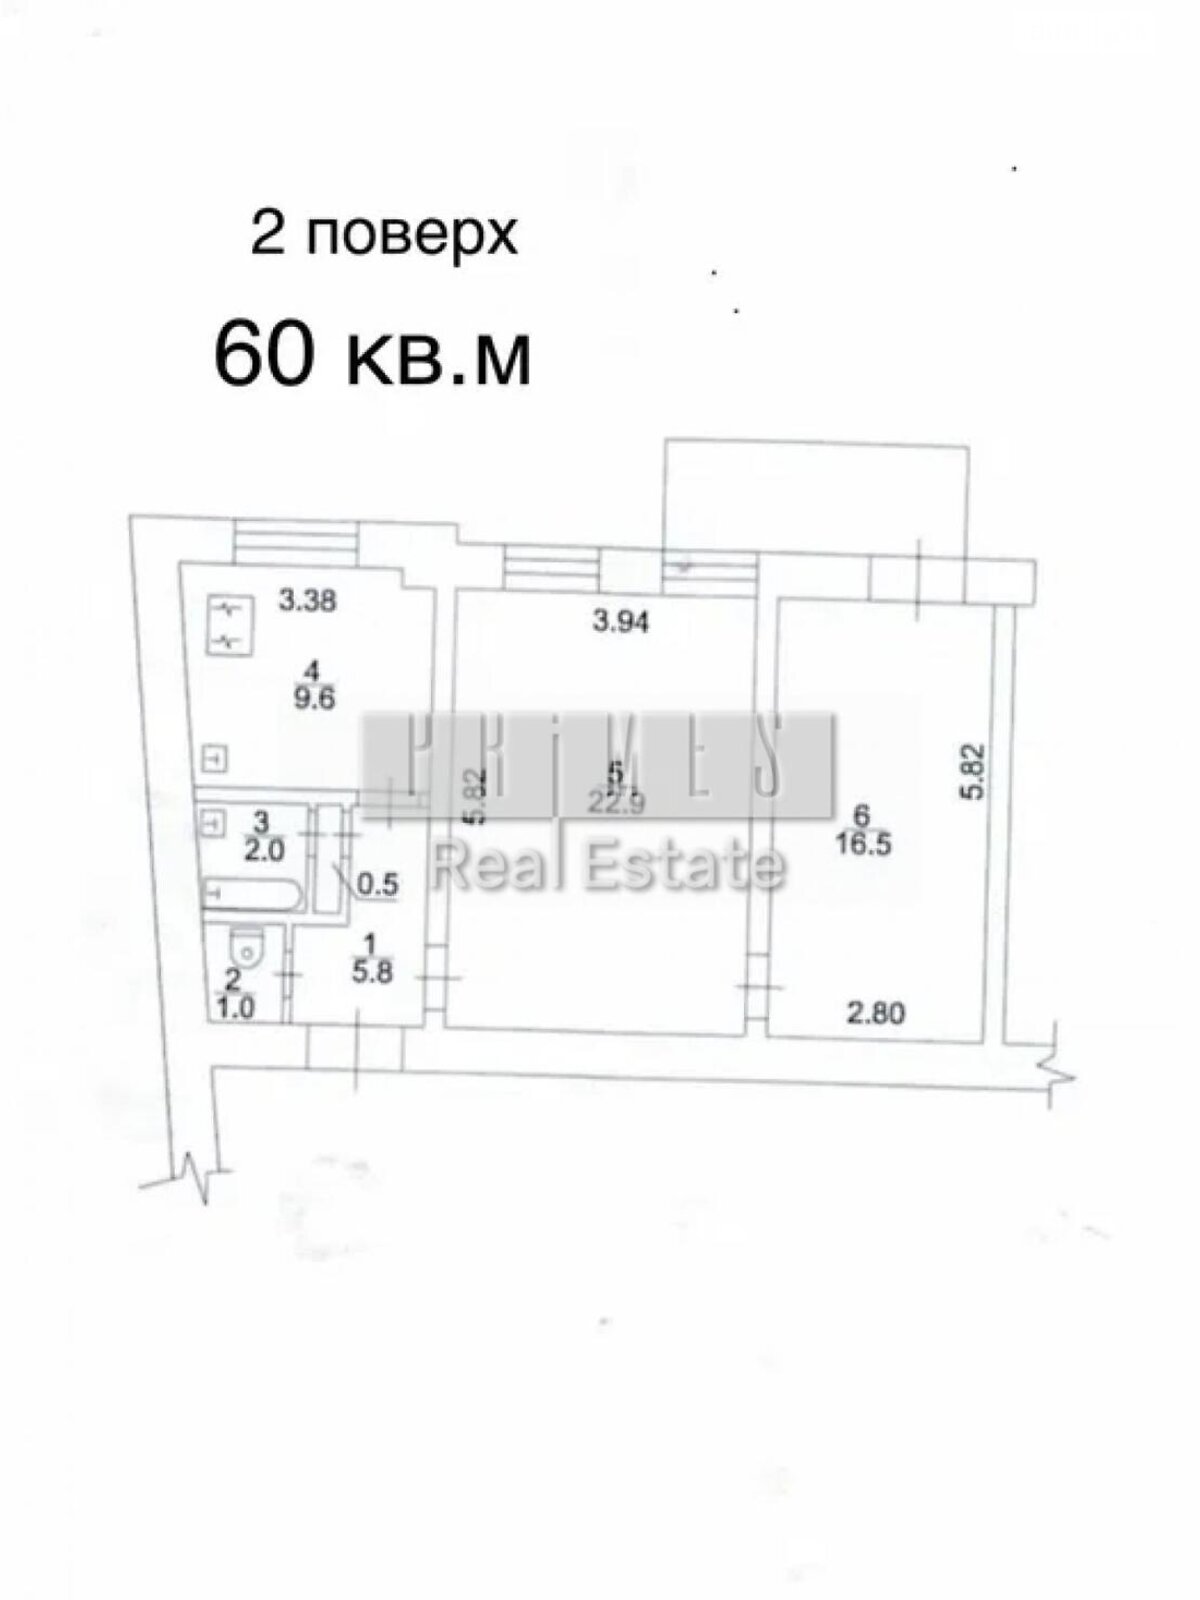 Офісне приміщення на 130 кв.м. в Києві фото 1